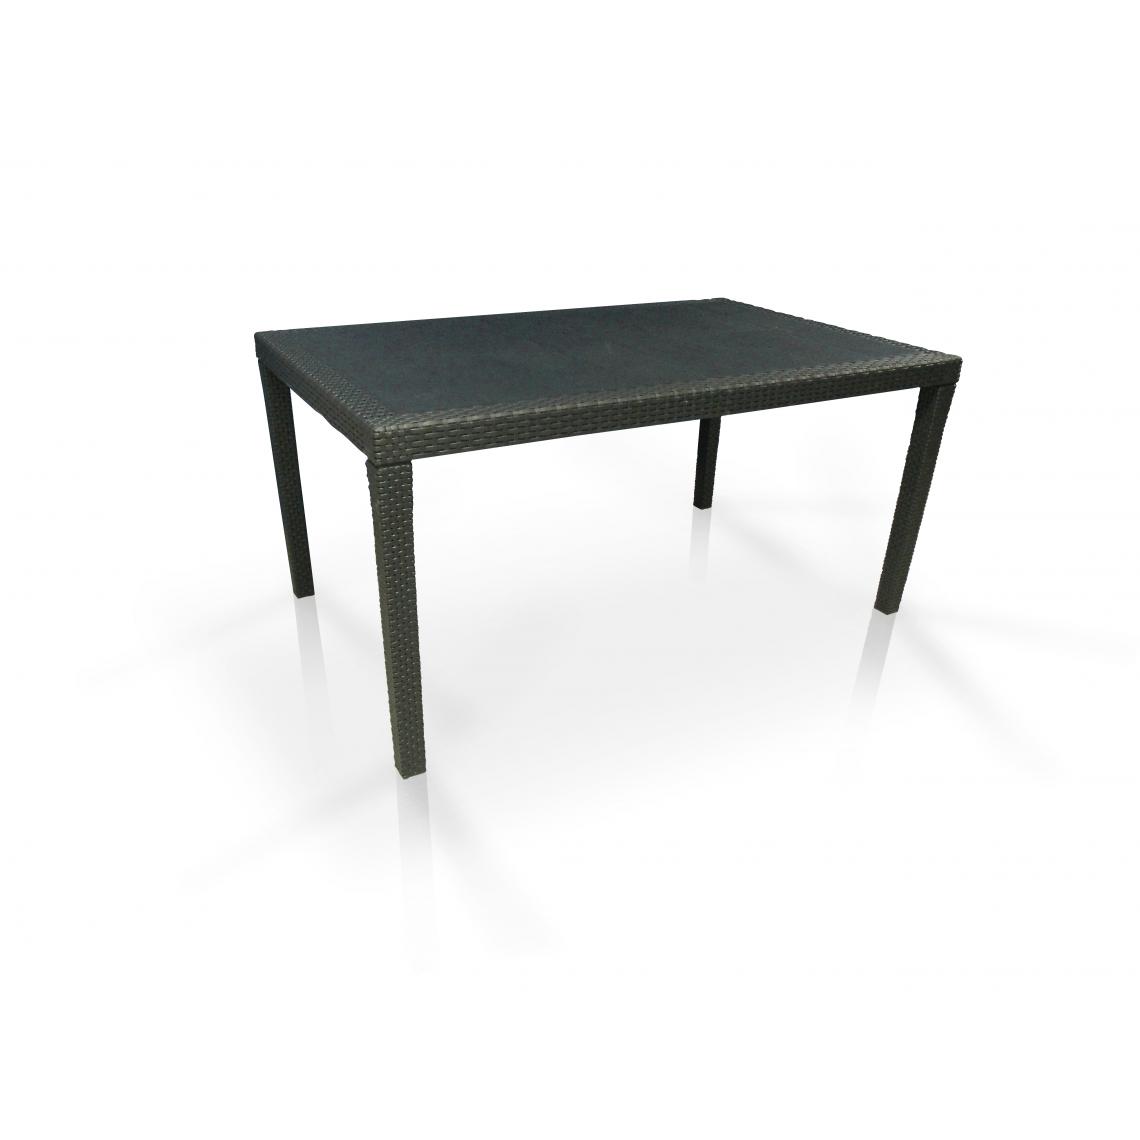 Alter - Table extensible en résine tressée effet rotin, coloris anthracite, fermée : cm150 (extensible jusqu'à 220) x 90 x h72 - Tables à manger